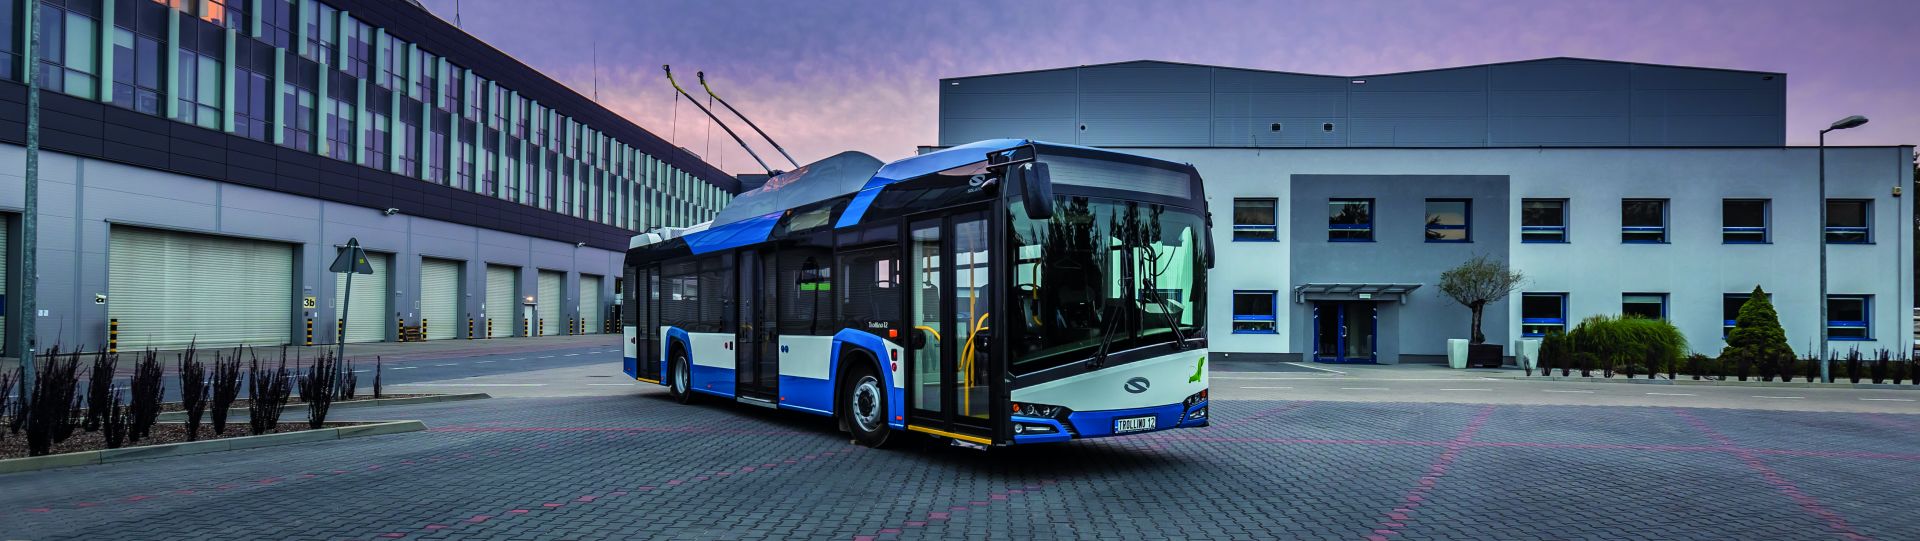 Solaris erhält einen Großauftrag für die Lieferung von Trolleybussen nach Saint-Etienne in Frankreich